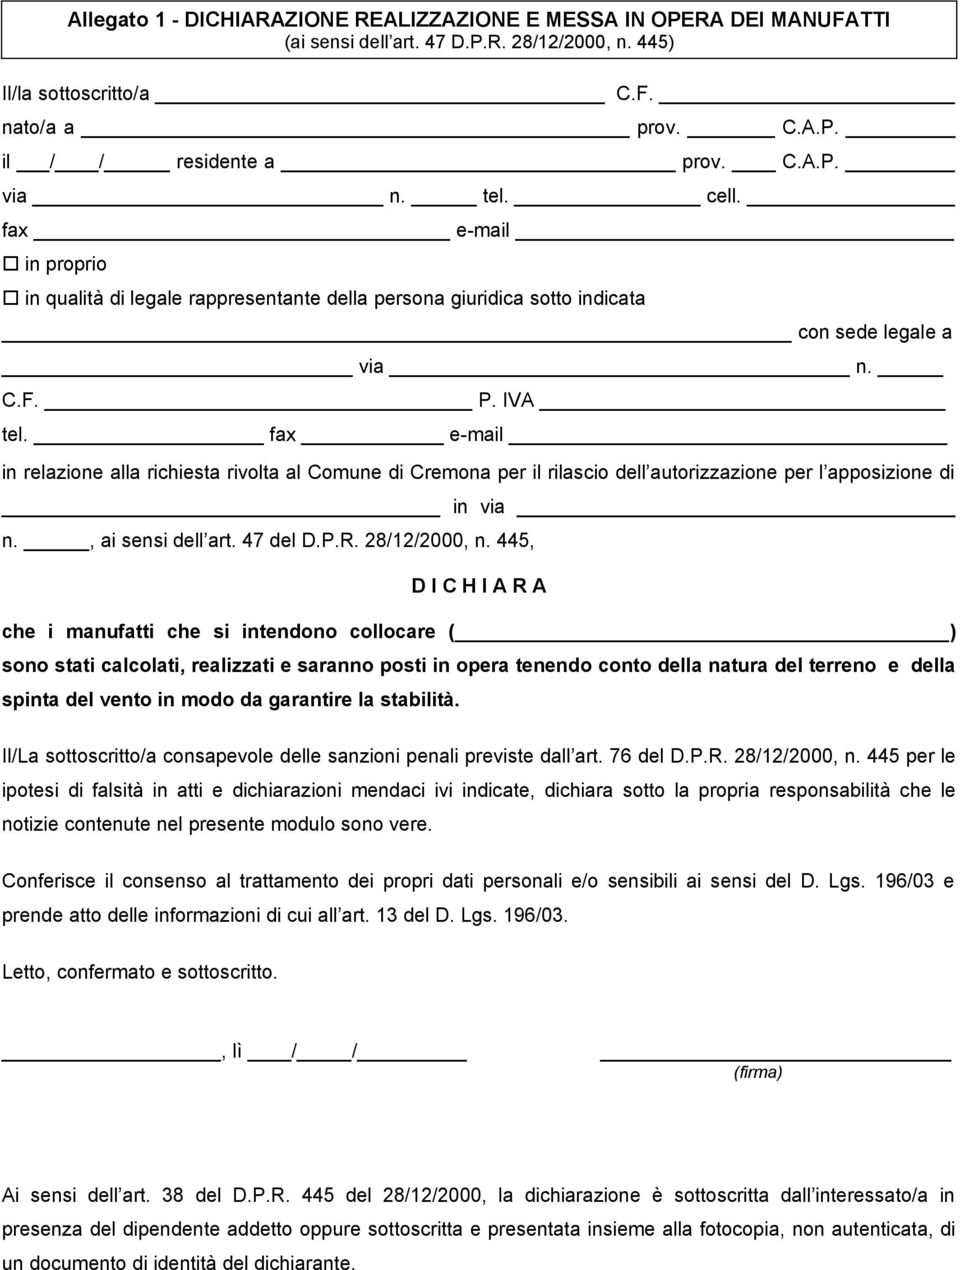 fax e-mail in relazione alla richiesta rivolta al Comune di Cremona per il rilascio dell autorizzazione per l apposizione di in via n., ai sensi dell art. 47 del D.P.R. 28/12/2000, n.